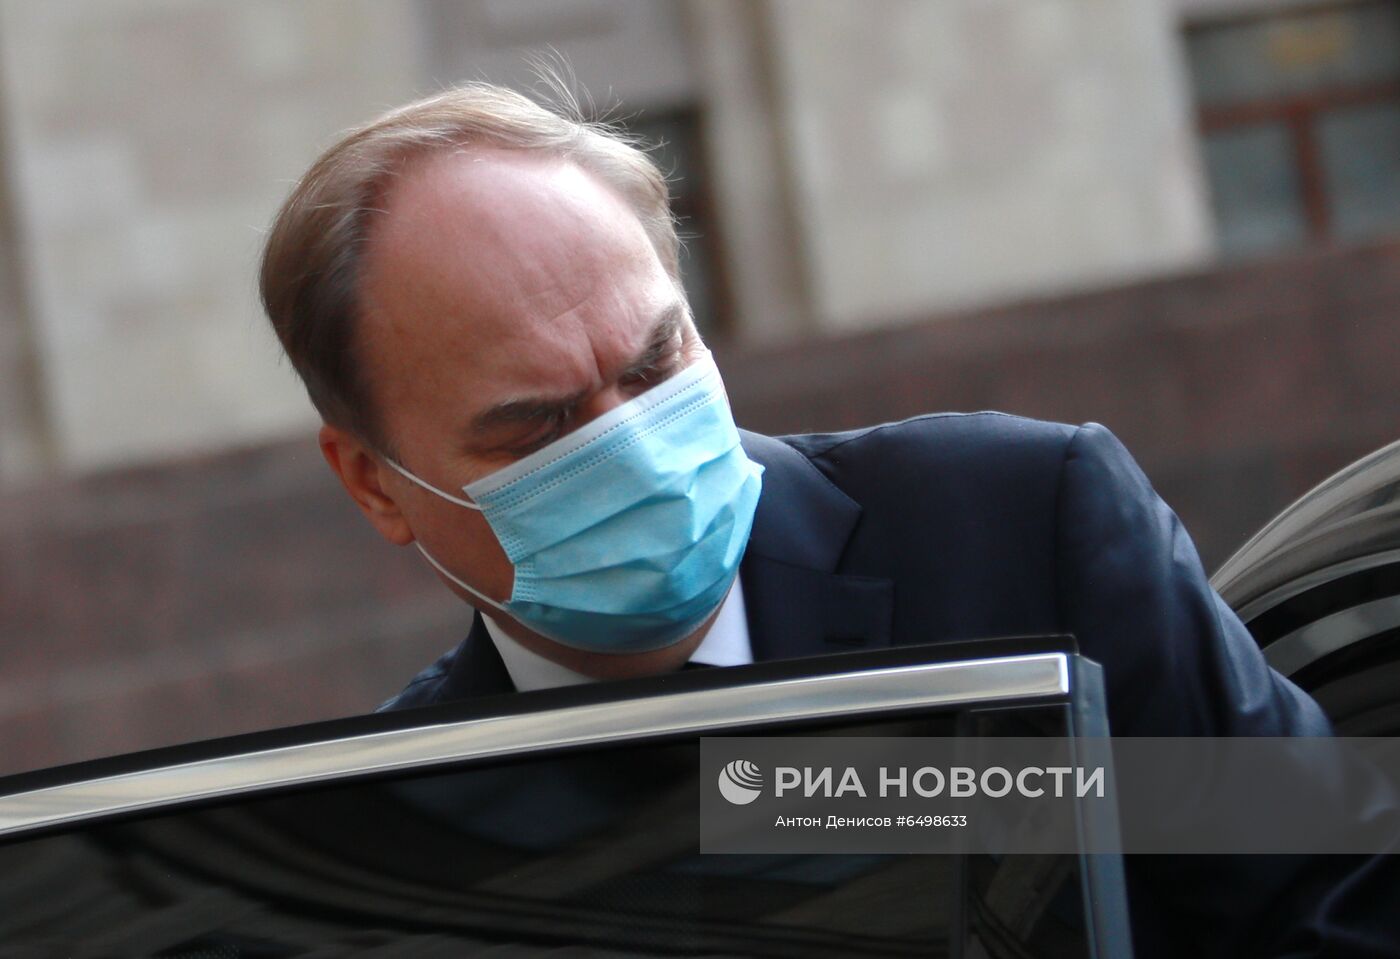 Посол России в США Антонов прибыл в МИД РФ